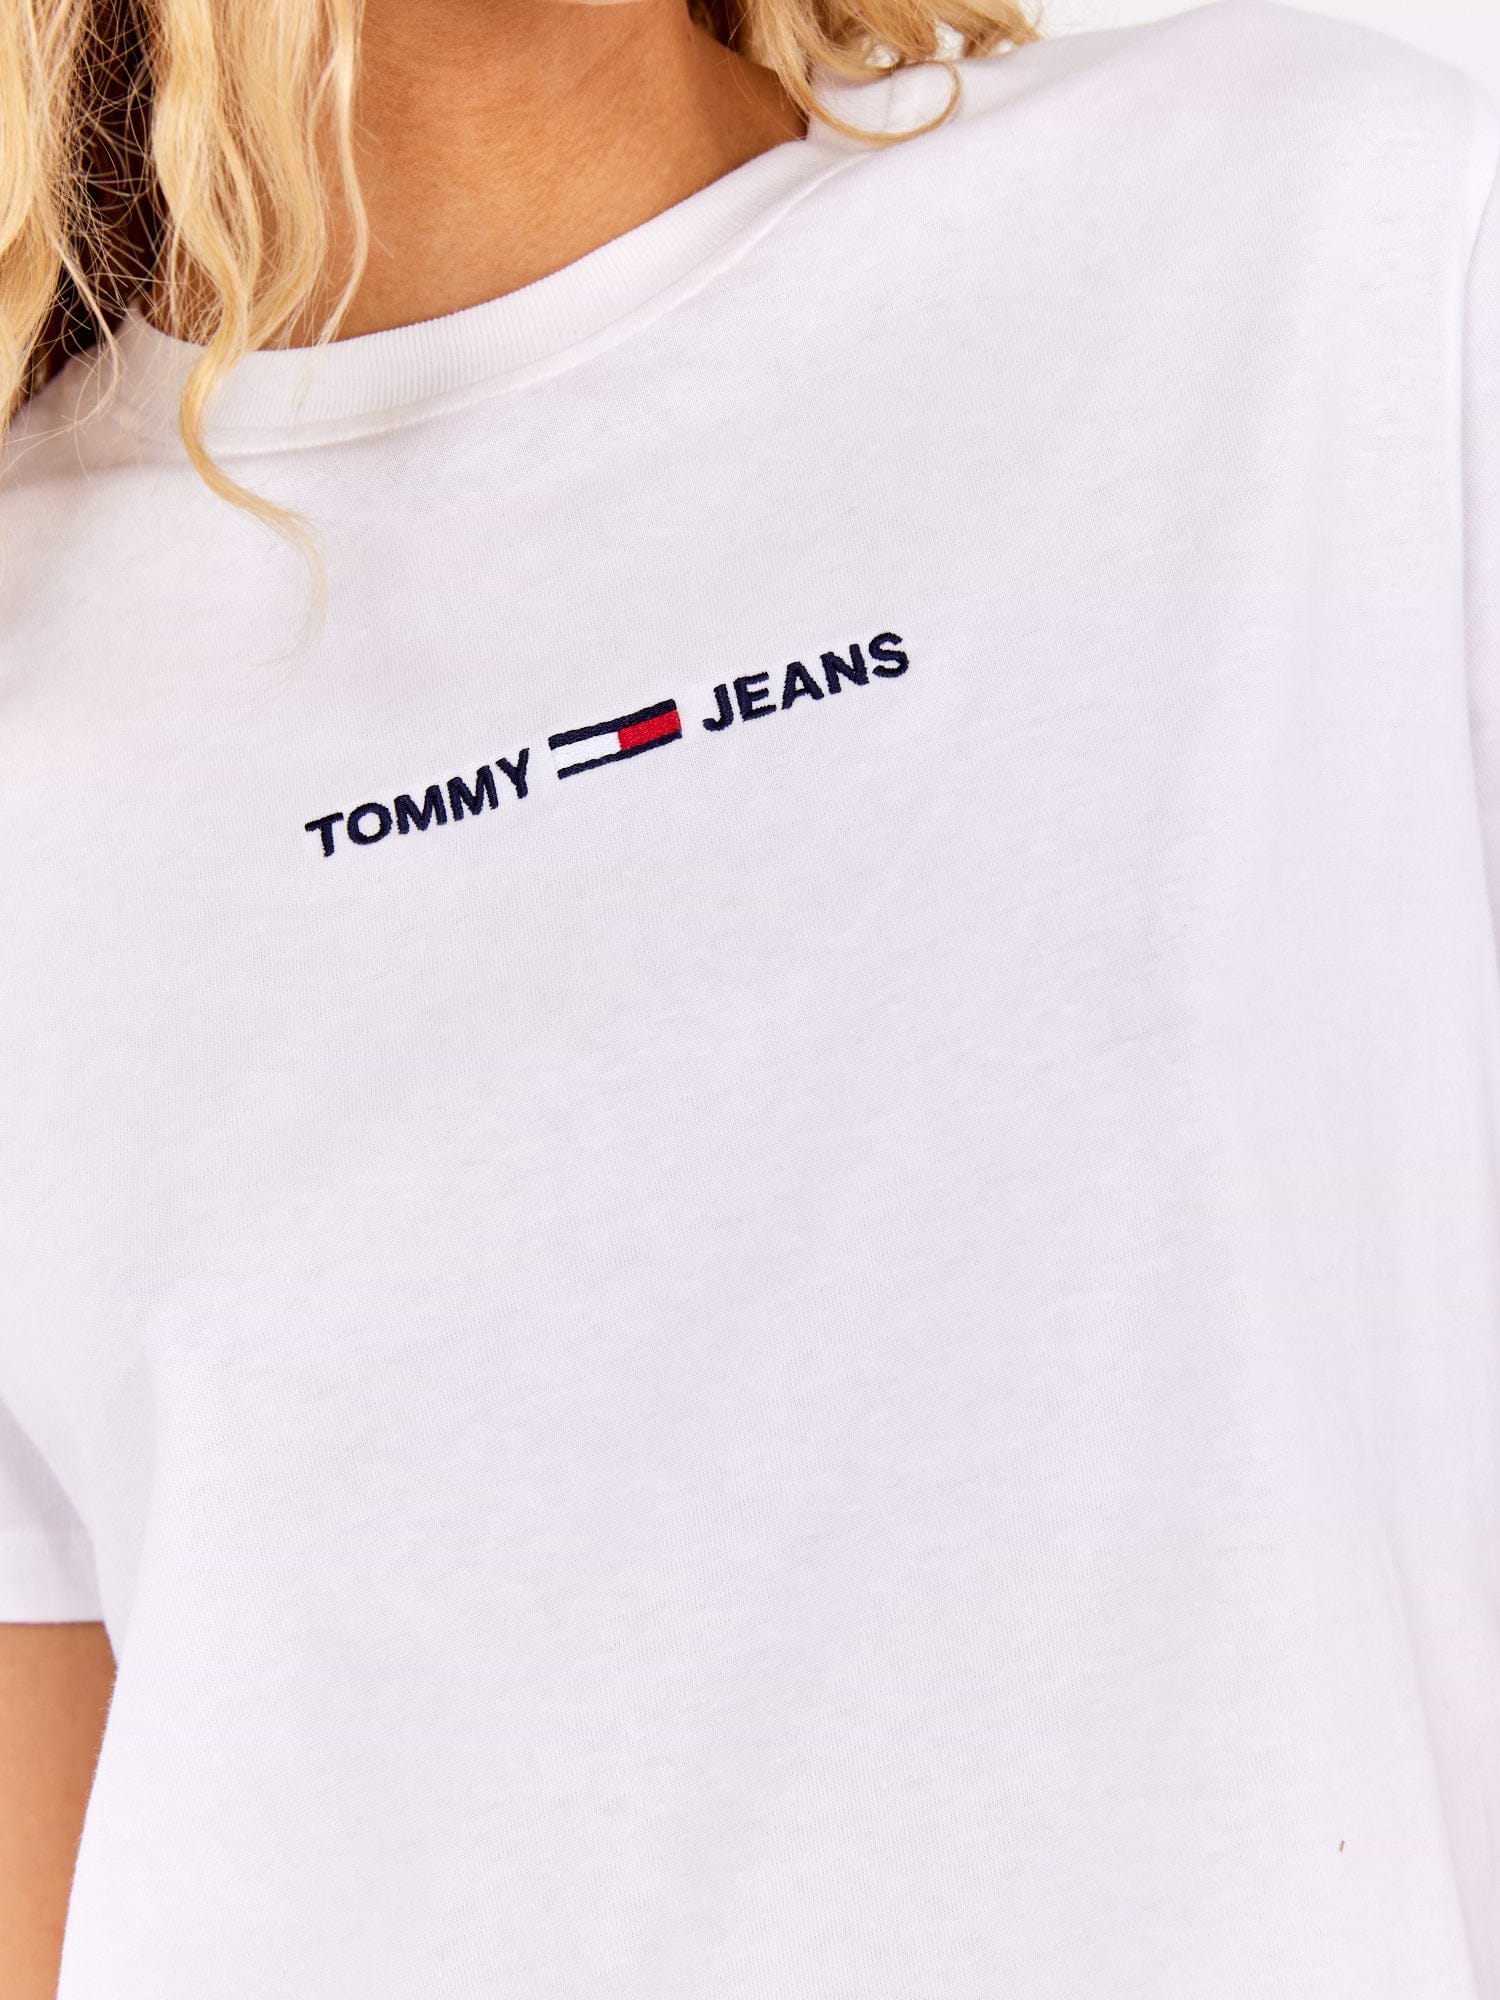 טישירט קרופ עם הדפס לוגו קדמי- Tommy Hilfiger|טומי הילפיגר